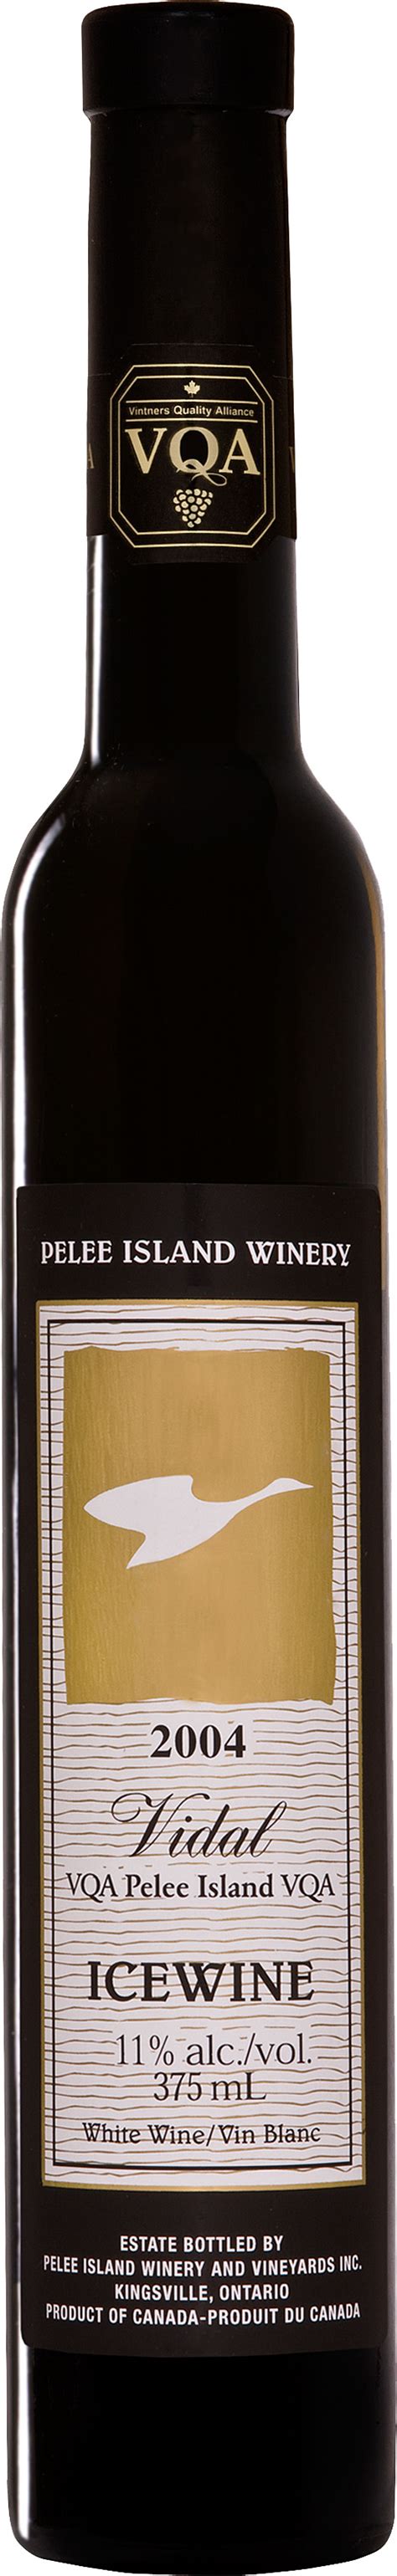 Vidal Icewine Vqa Pelee Island Winery Ontario